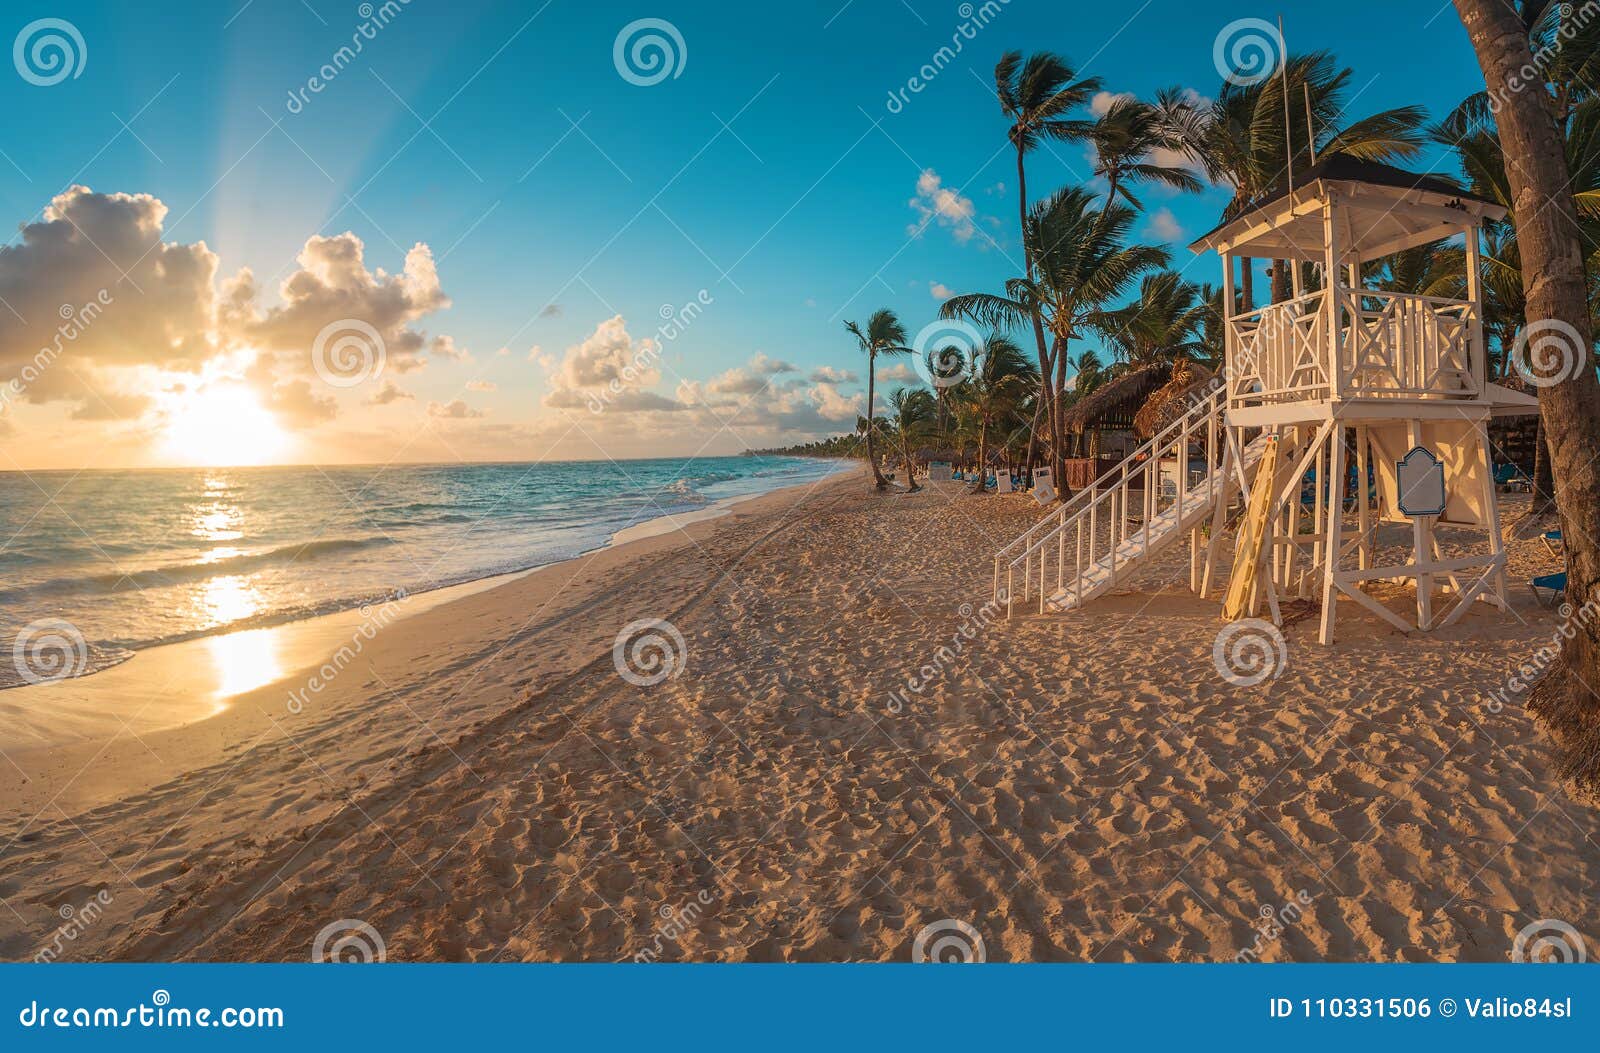 punta cana sunrise over caribbean beach with lifeguard stati